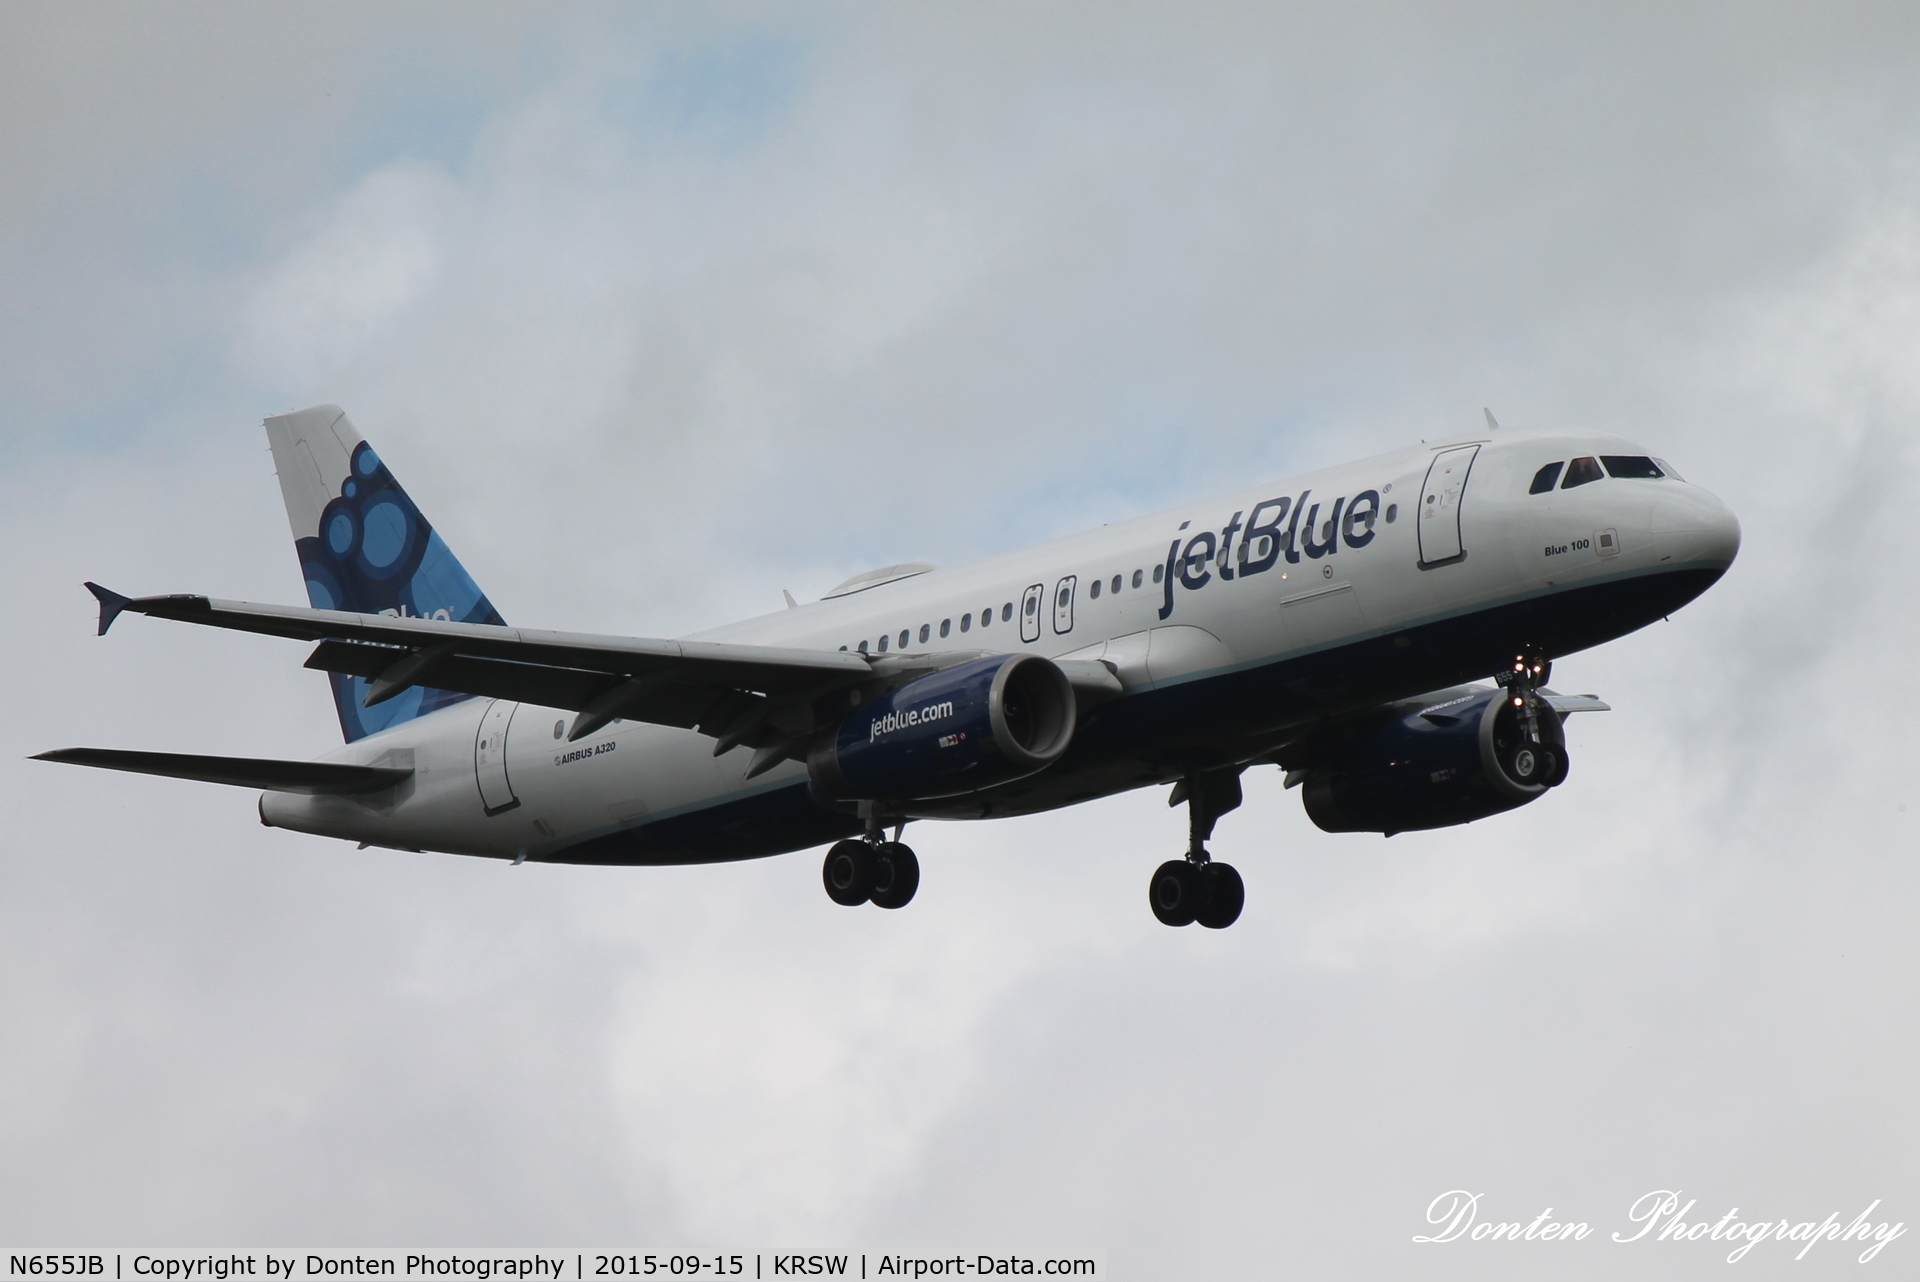 N655JB, 2007 Airbus A320-232 C/N 3072, JetBlue Flight 1511 (N655JB) 